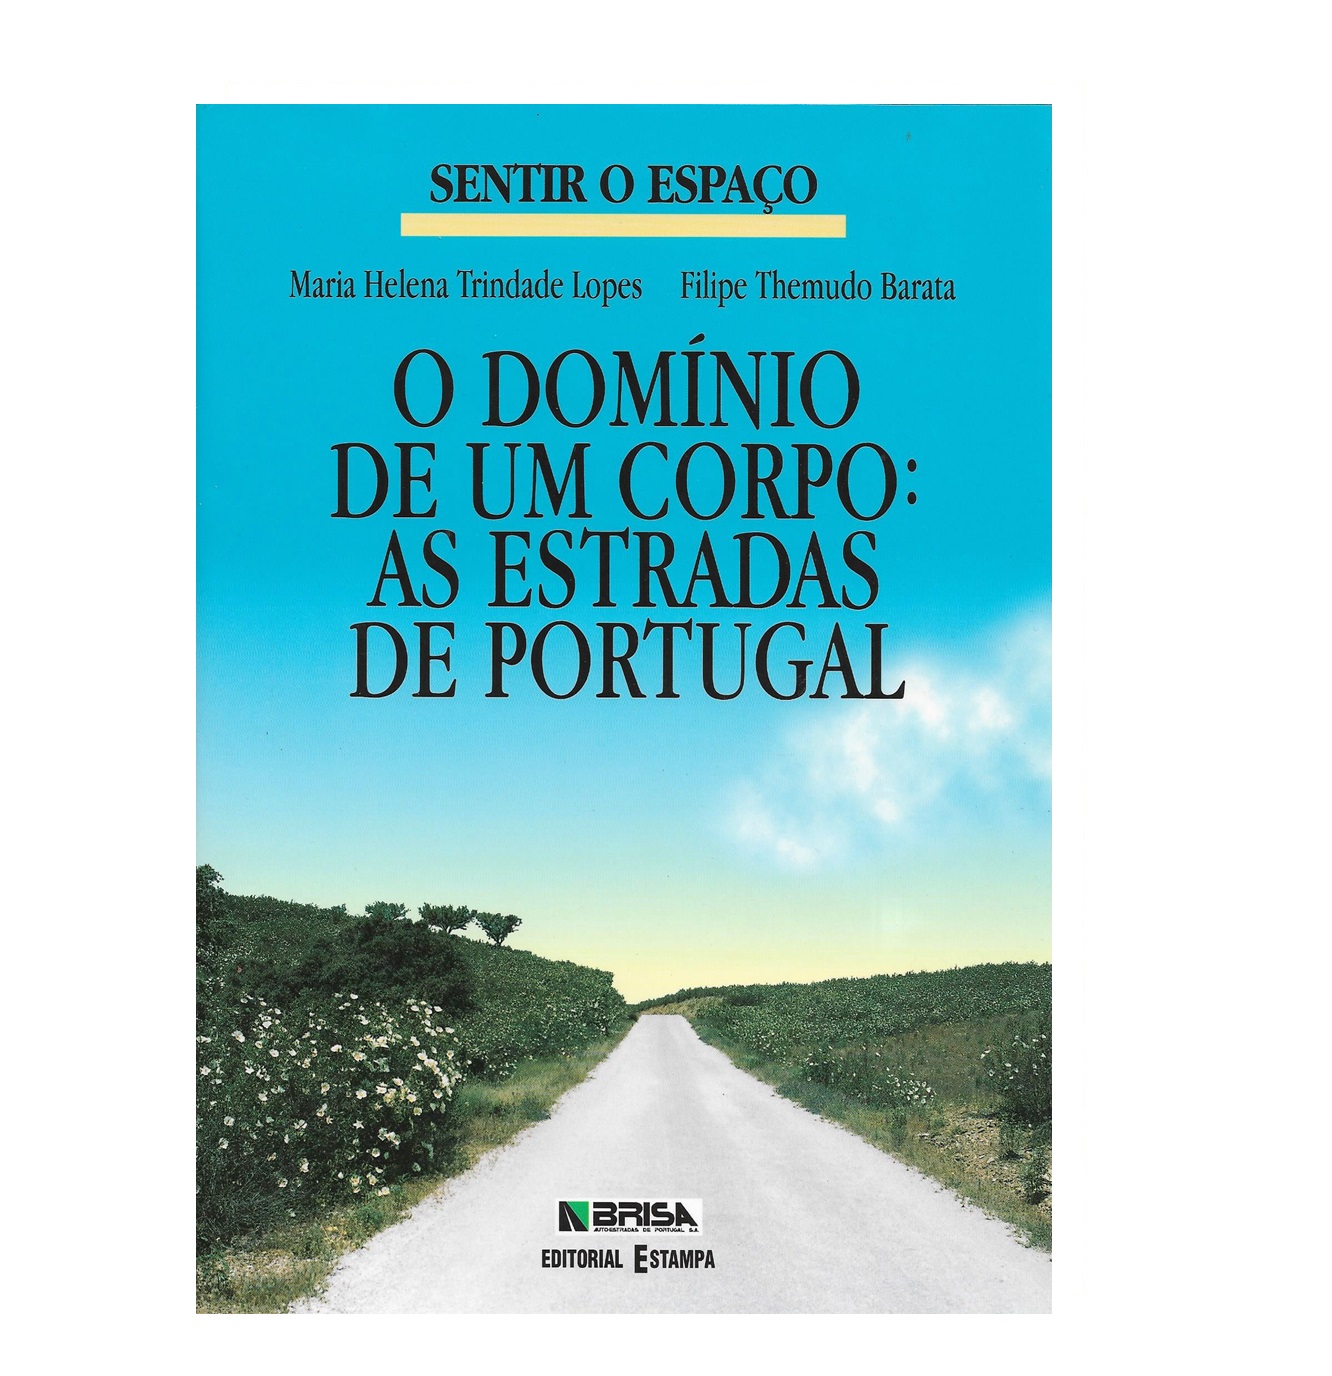 As Estradas de Portugal.